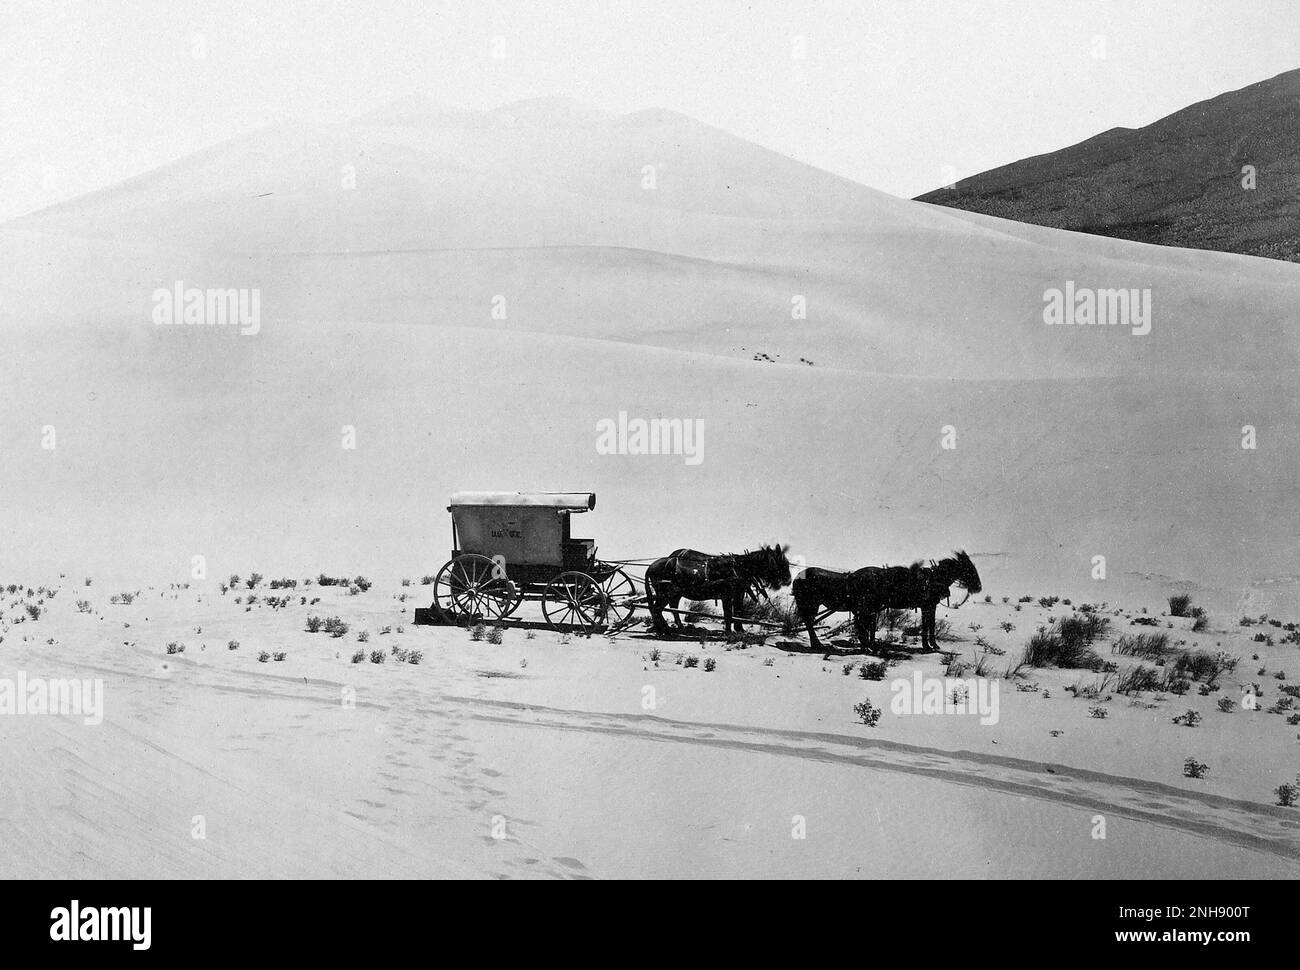 Desert Sand Hills près de Sink of Carson, Nevada. Photographié par Timothy H. O'Sullivan (américain, vers 1840-1882); en 1867. Imprimé argentés. Banque D'Images